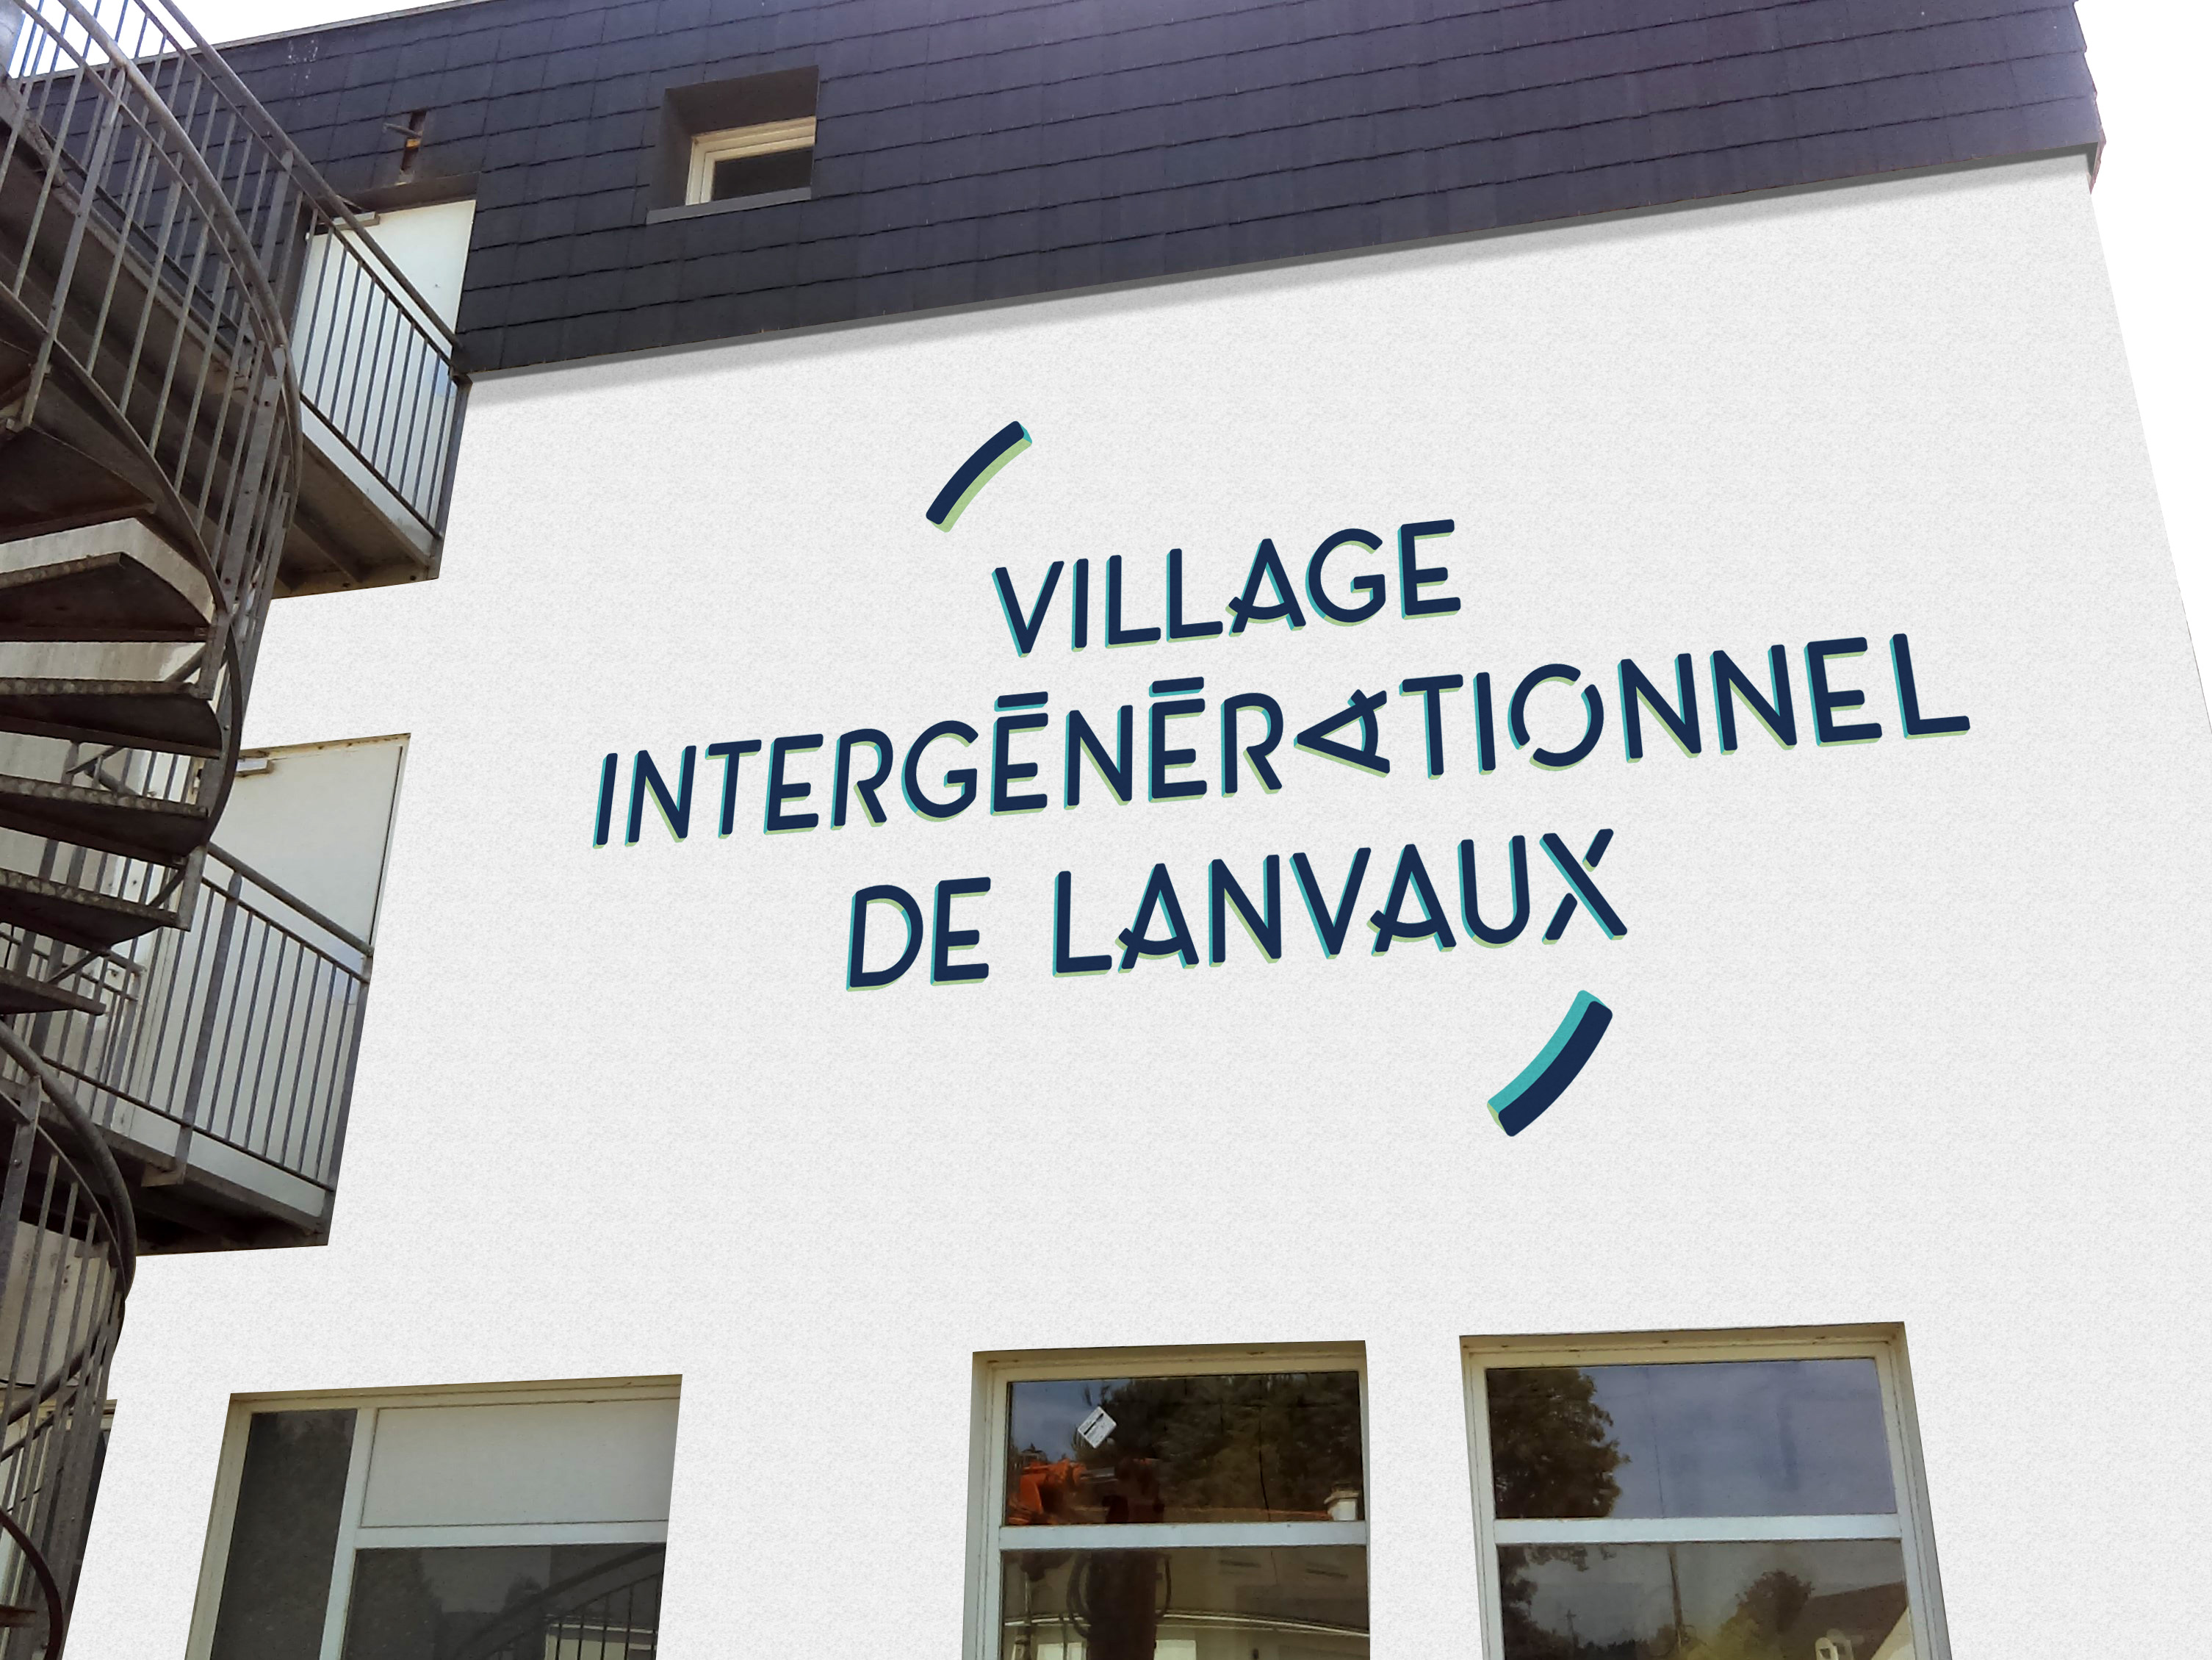 village intergénérationnel de lanvaux